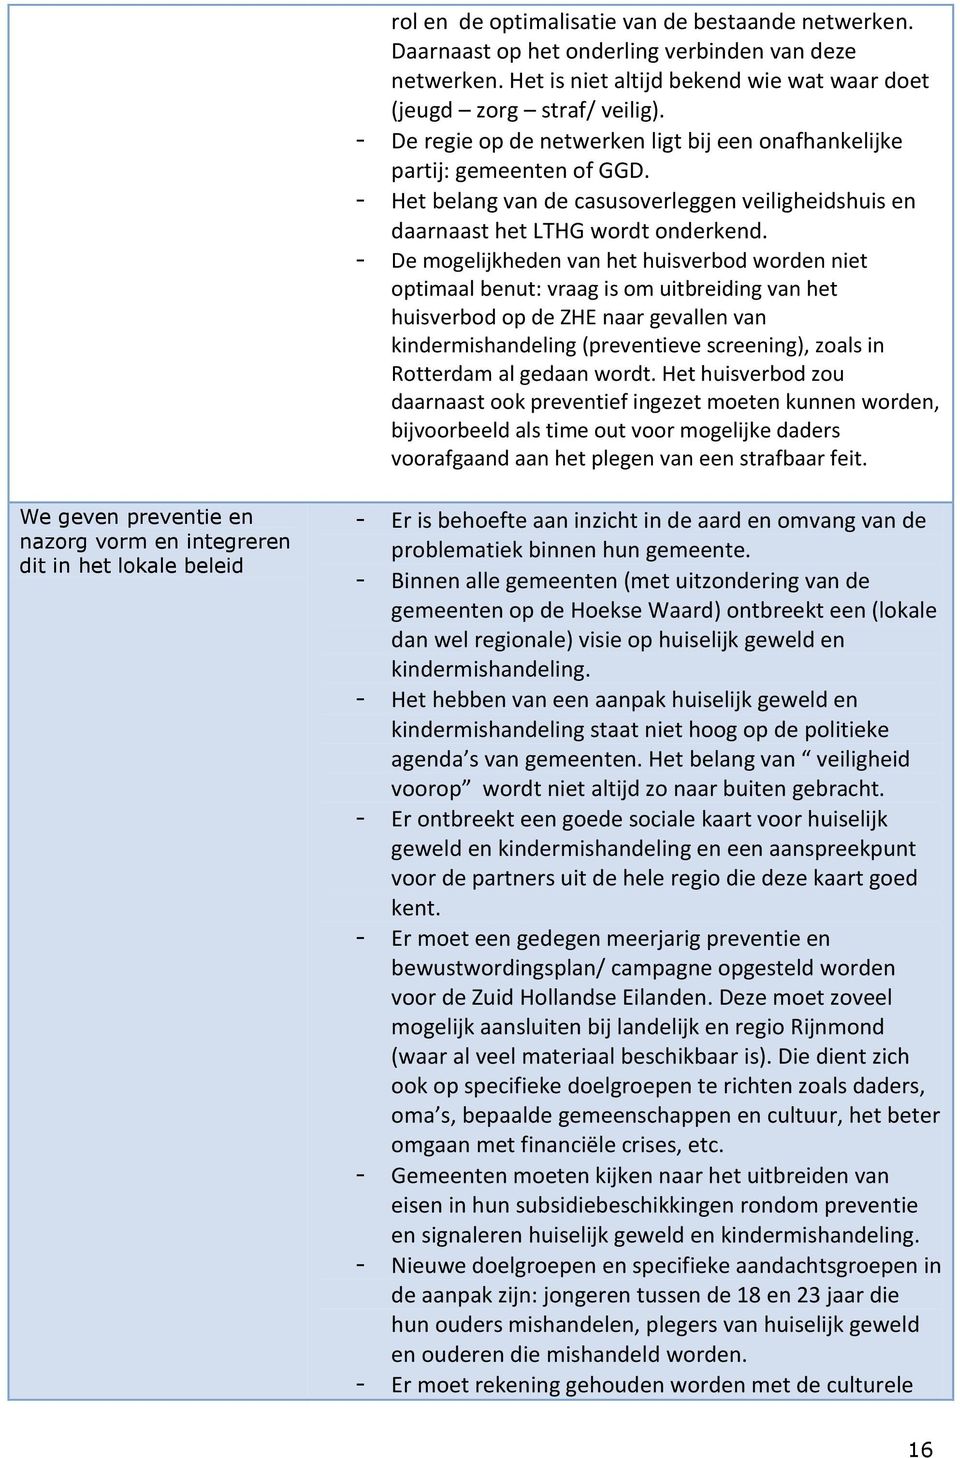 - De mogelijkheden van het huisverbod worden niet optimaal benut: vraag is om uitbreiding van het huisverbod op de ZHE naar gevallen van kindermishandeling (preventieve screening), zoals in Rotterdam